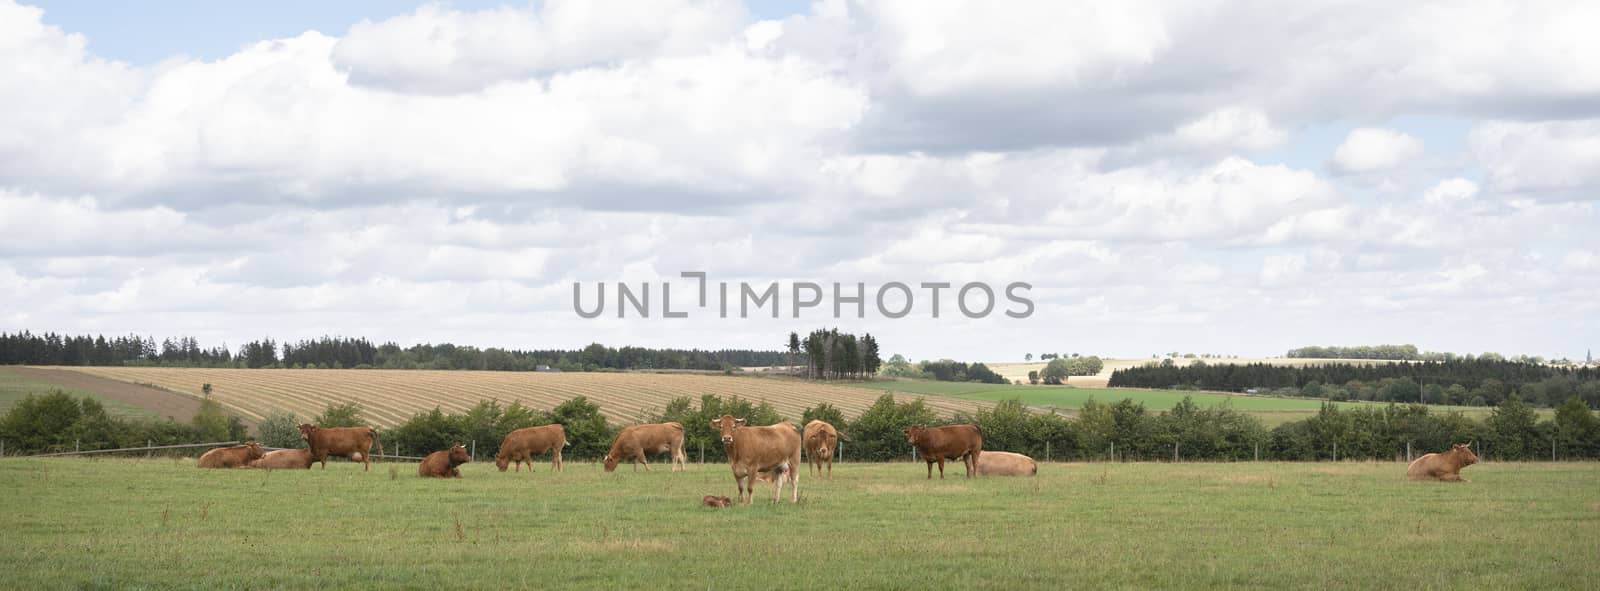 brown cows in german eifel countryside landscape by ahavelaar